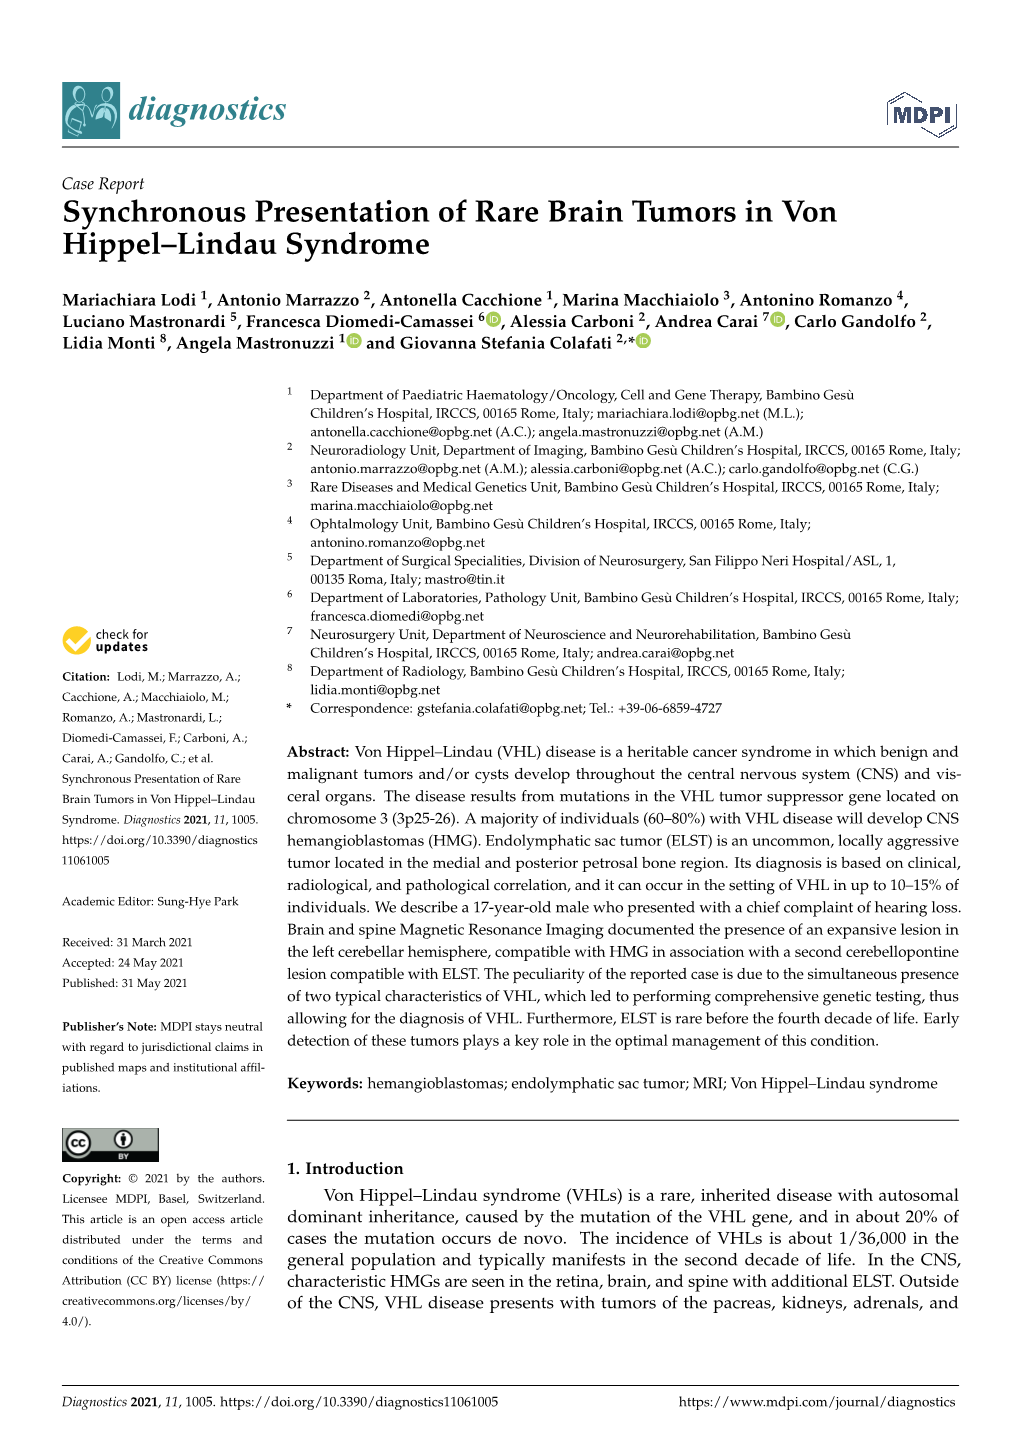 Synchronous Presentation of Rare Brain Tumors in Von Hippel–Lindau Syndrome